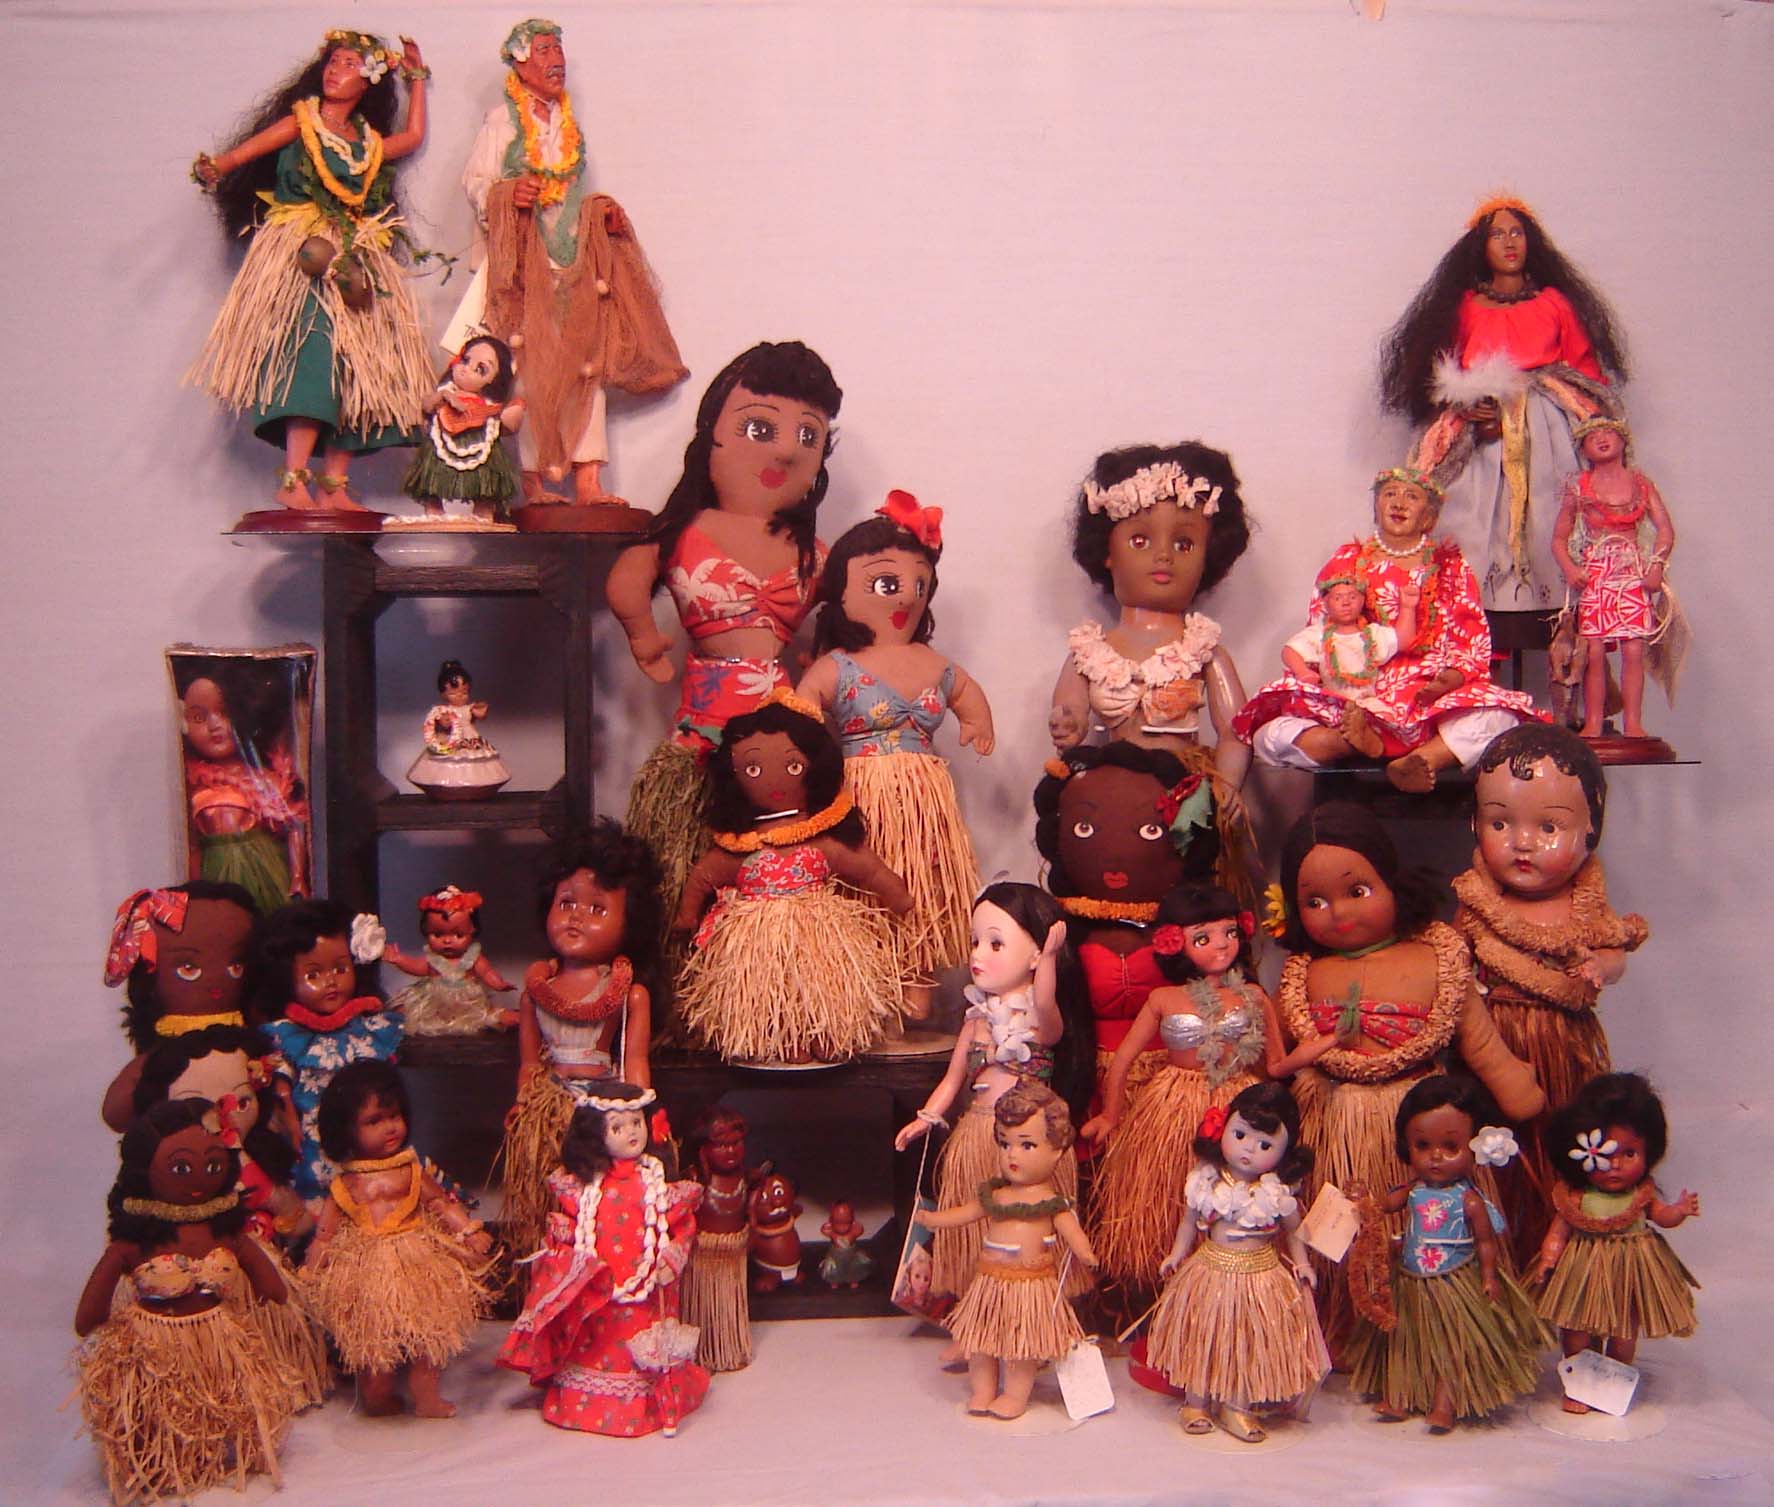 Other Hawaiian dolls